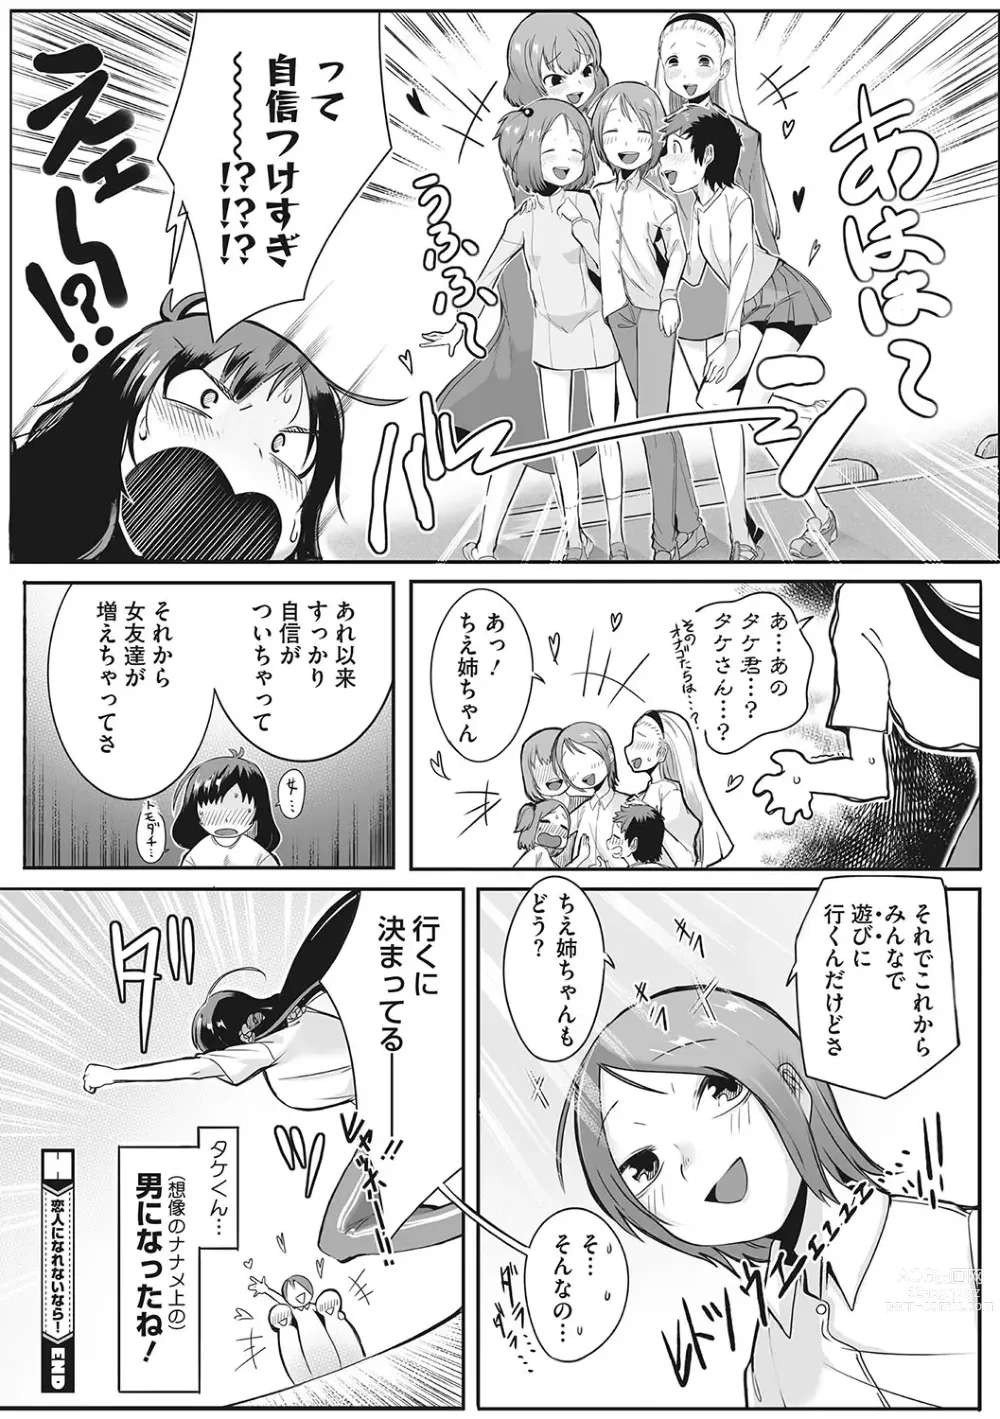 Page 197 of manga Hatsujou Girl ga Arawareta!